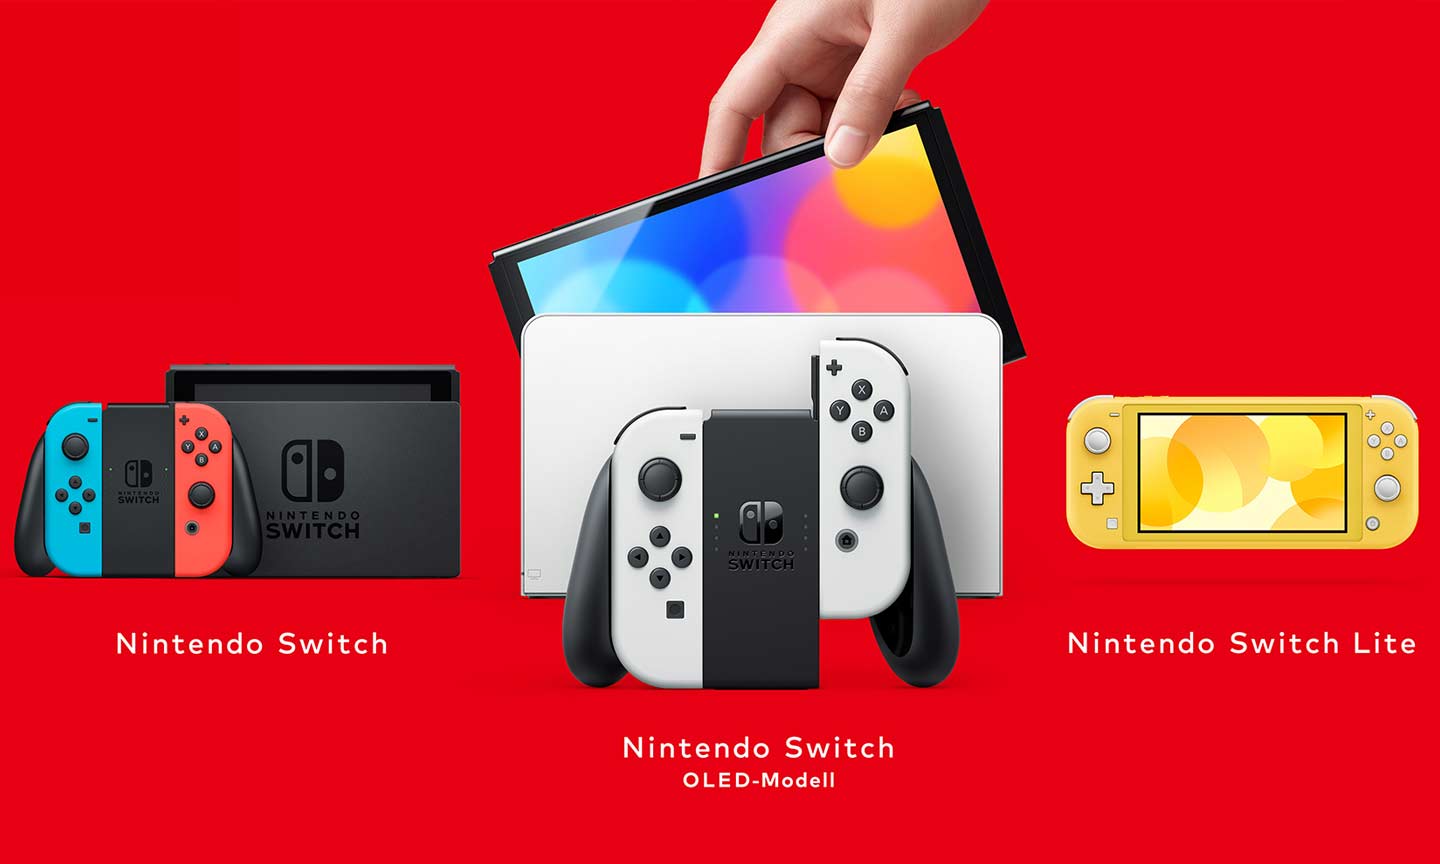 Die 3 verschiedenen Switch-Modelle: Standard (2017, bereits 2019 überarbeitet), OLED-Modell (2021) und Lite (2019). ©Nintendo; Bildquelle: nintendo.com